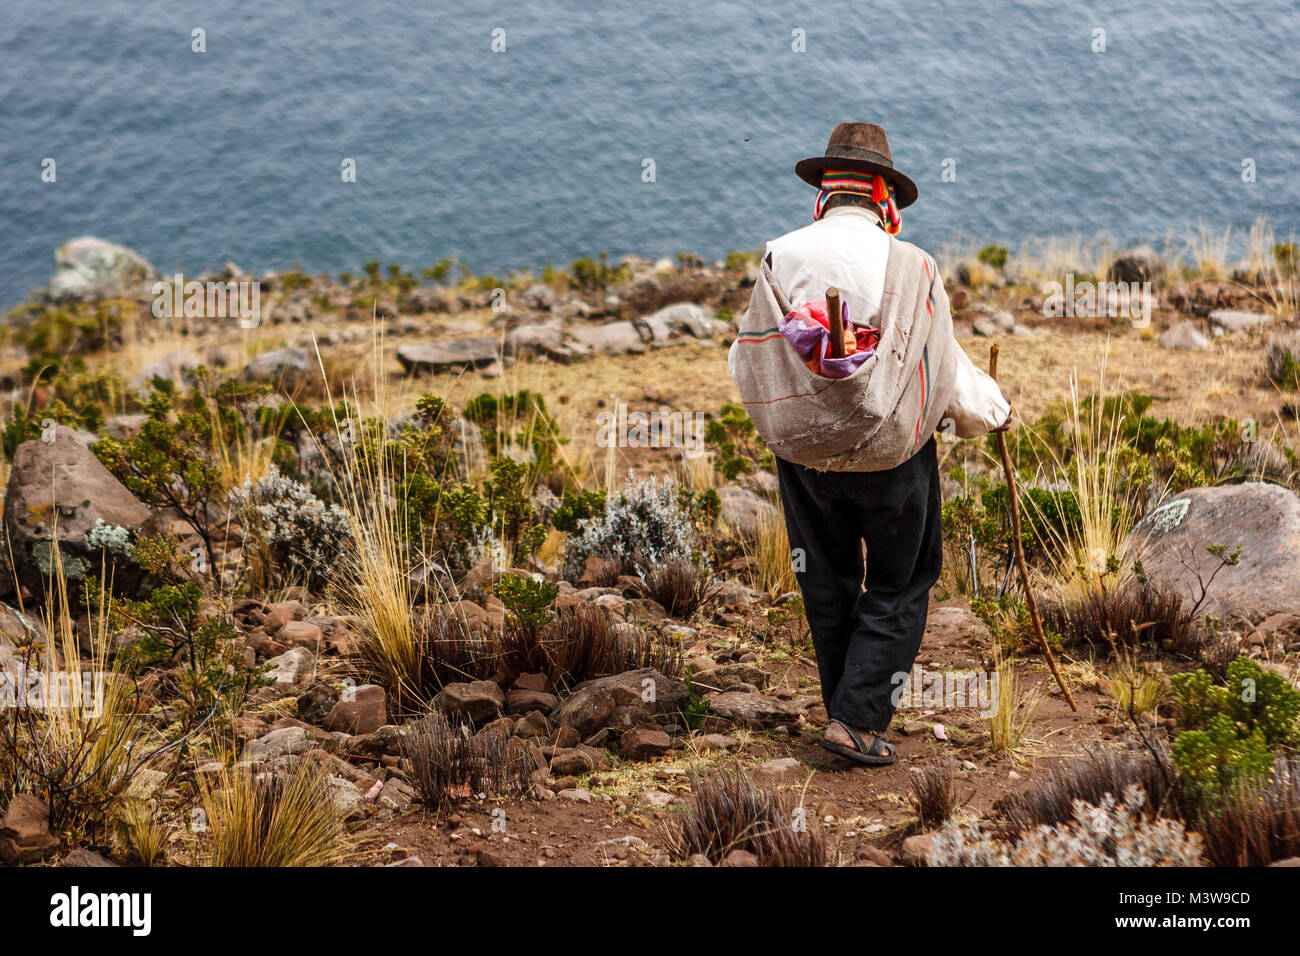 Pauvre homme vu de dos marchant sur une falaise, l'île de Taquile, lac Titicaca, Pérou Banque D'Images